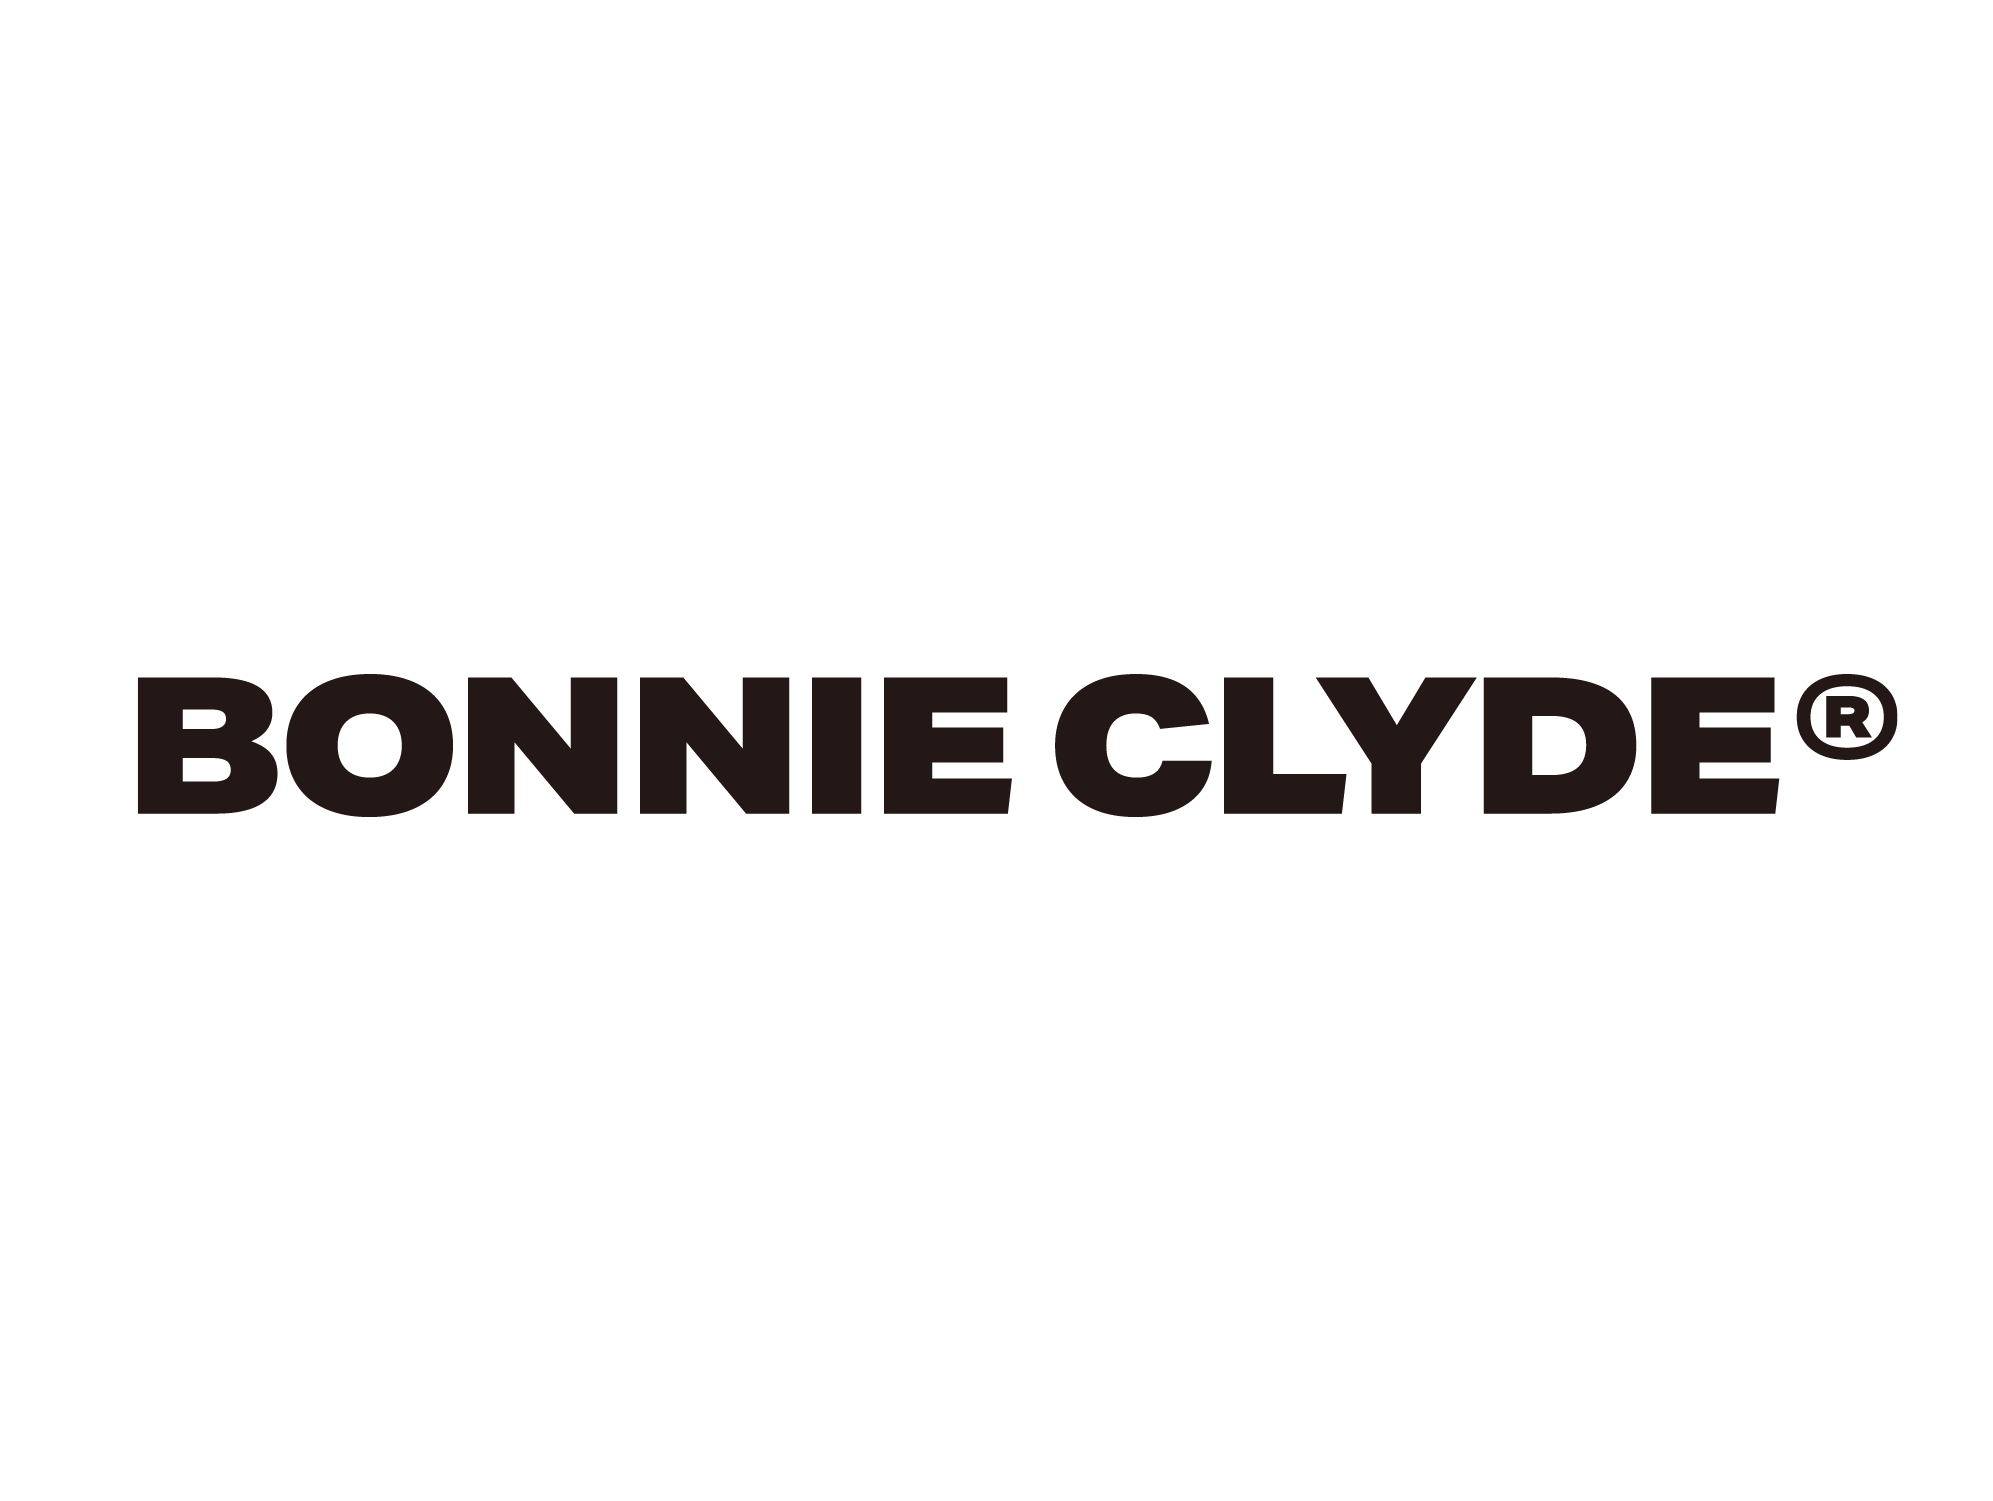 BONNIE CLYDE